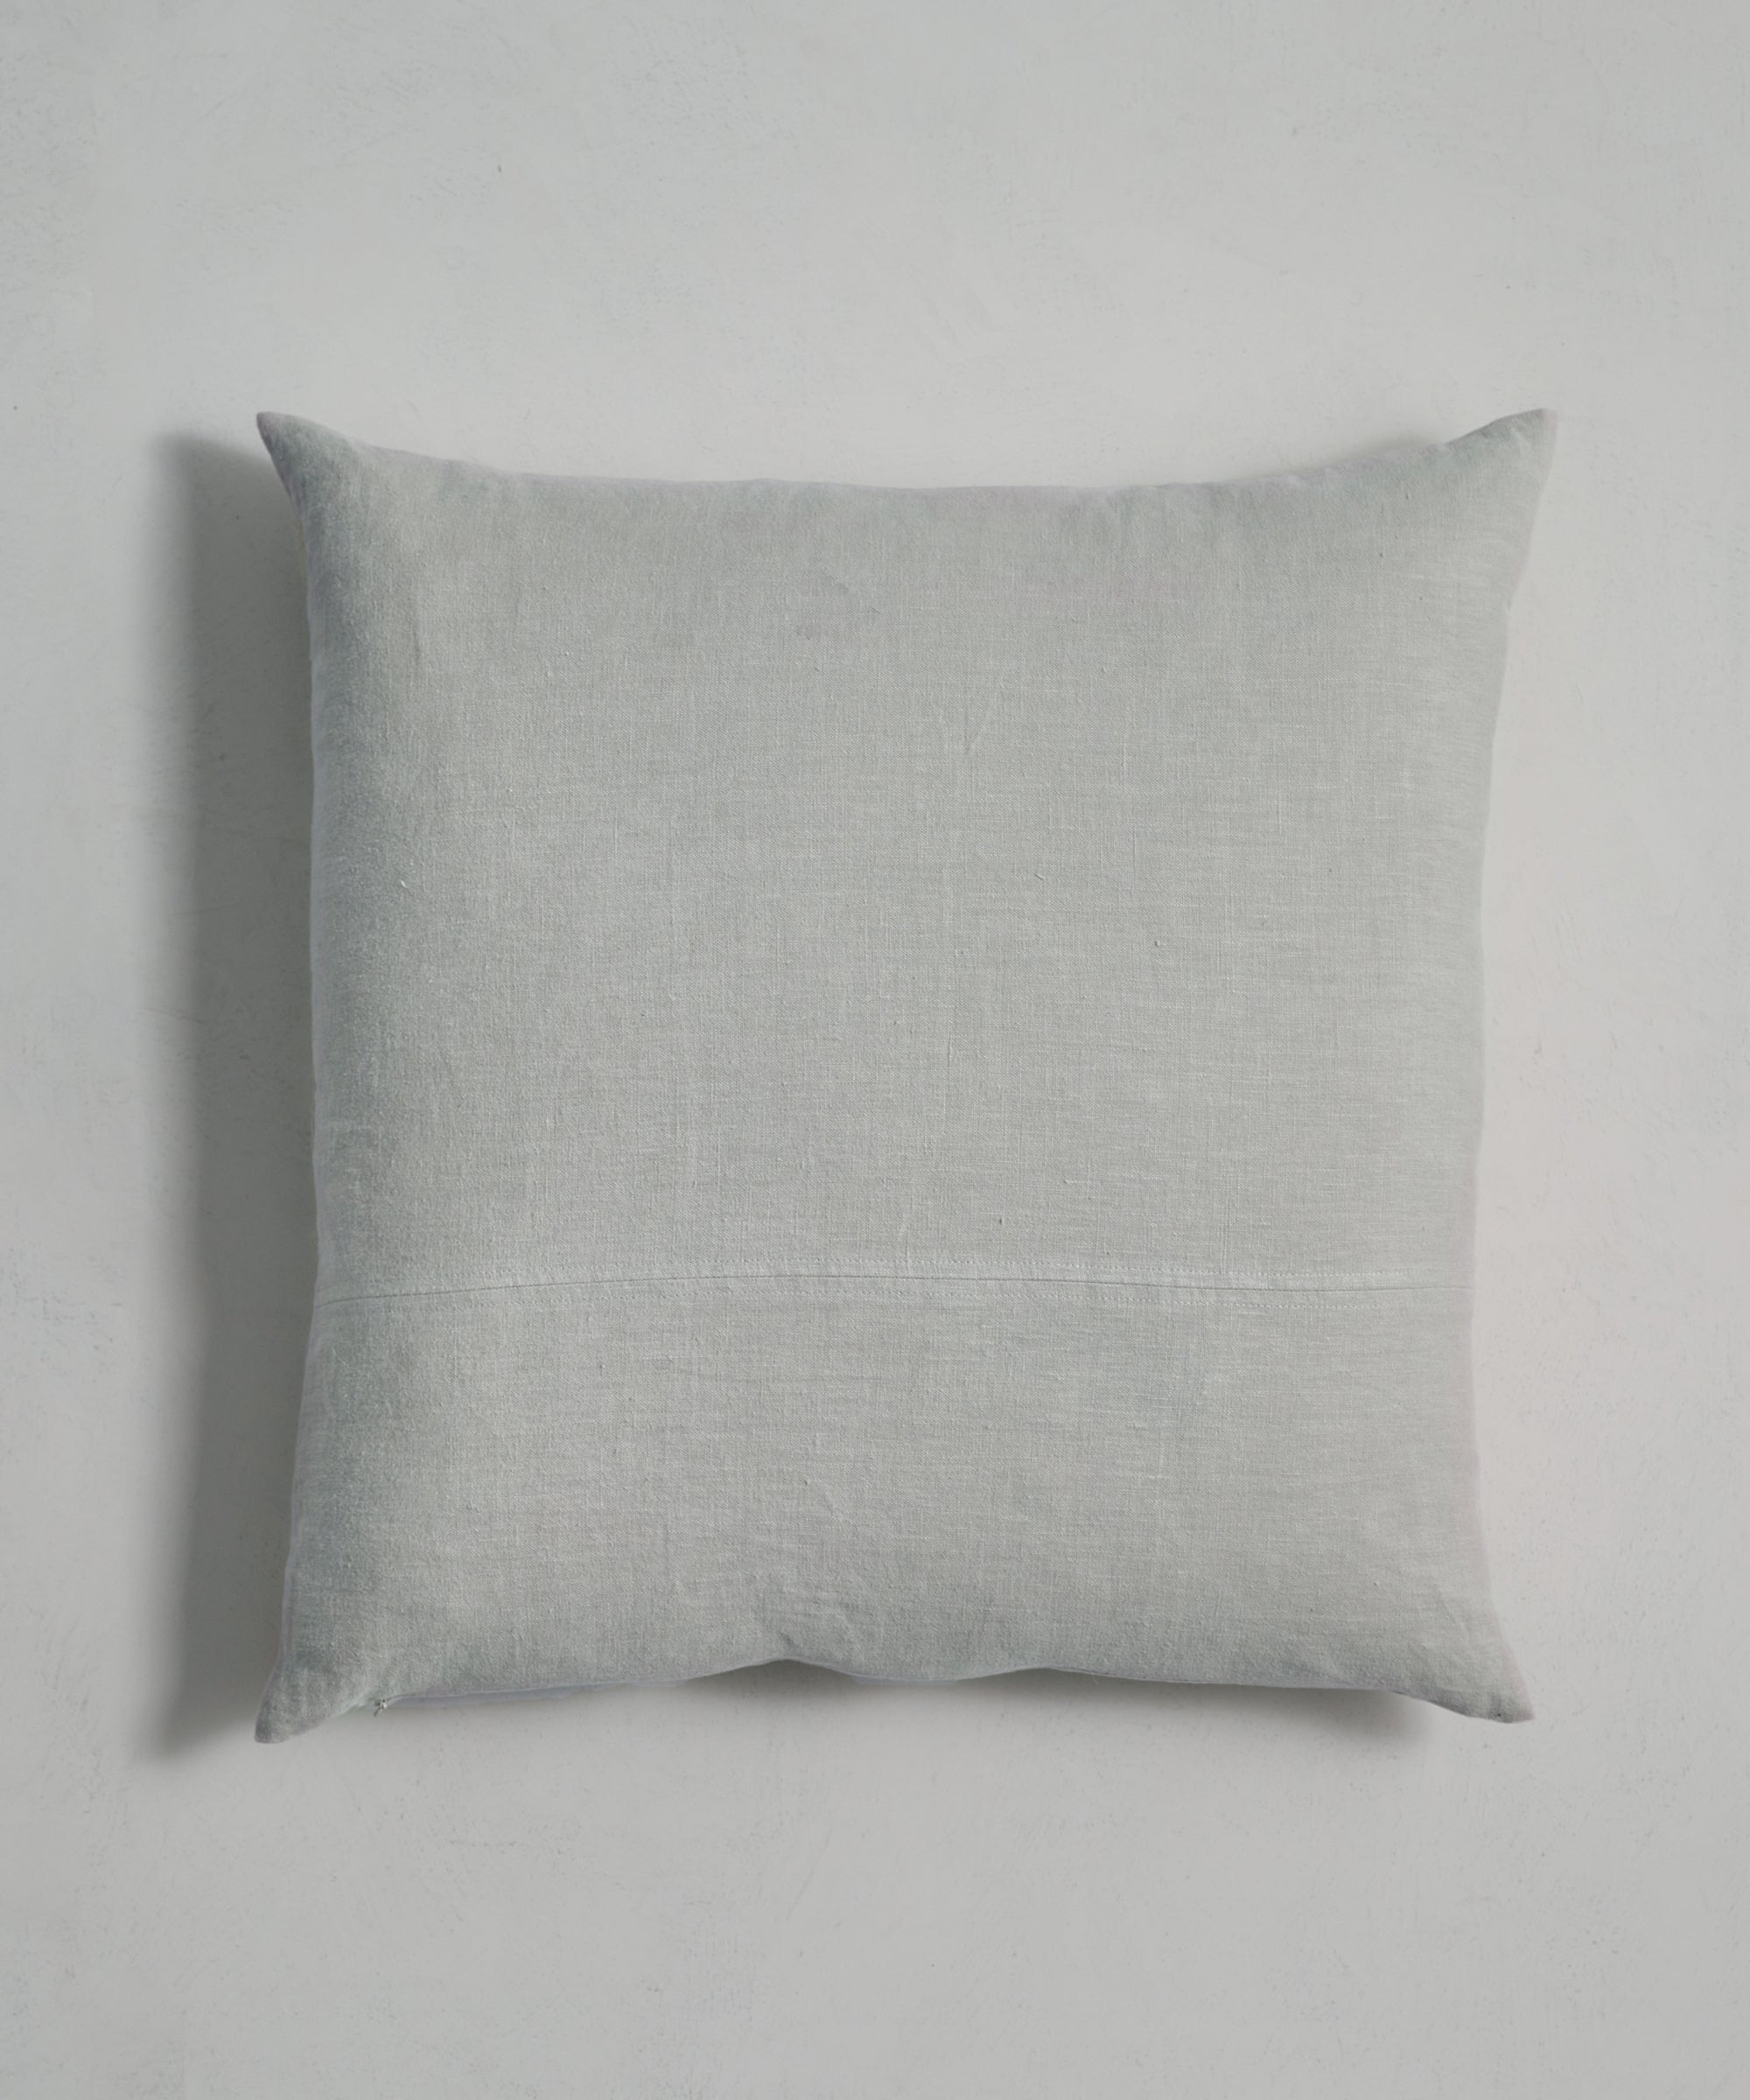 Jenni Kayne Luna Lumbar Pillow Size 16x55